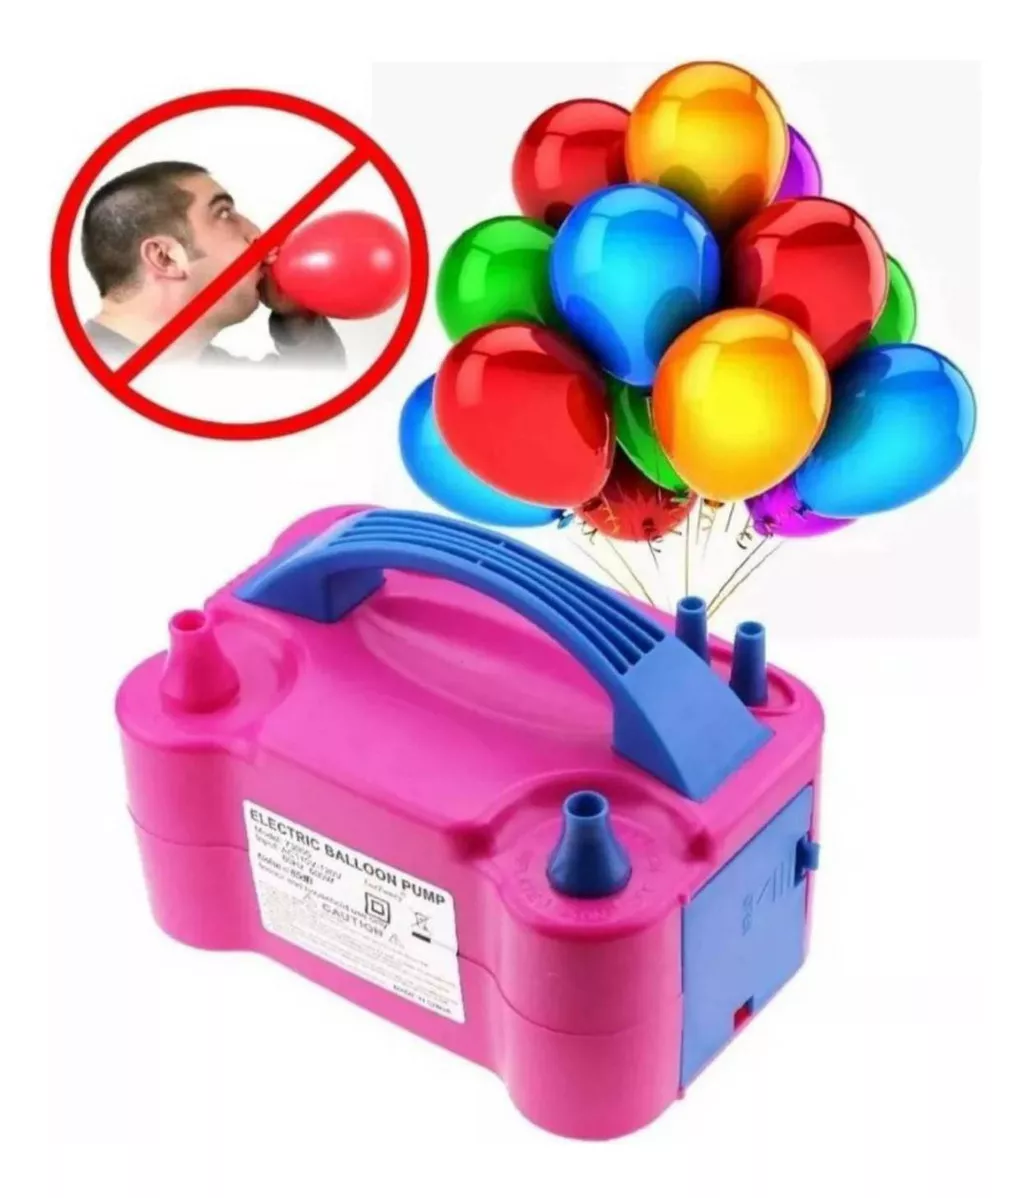 Segunda imagen para búsqueda de inflador de globos electrico